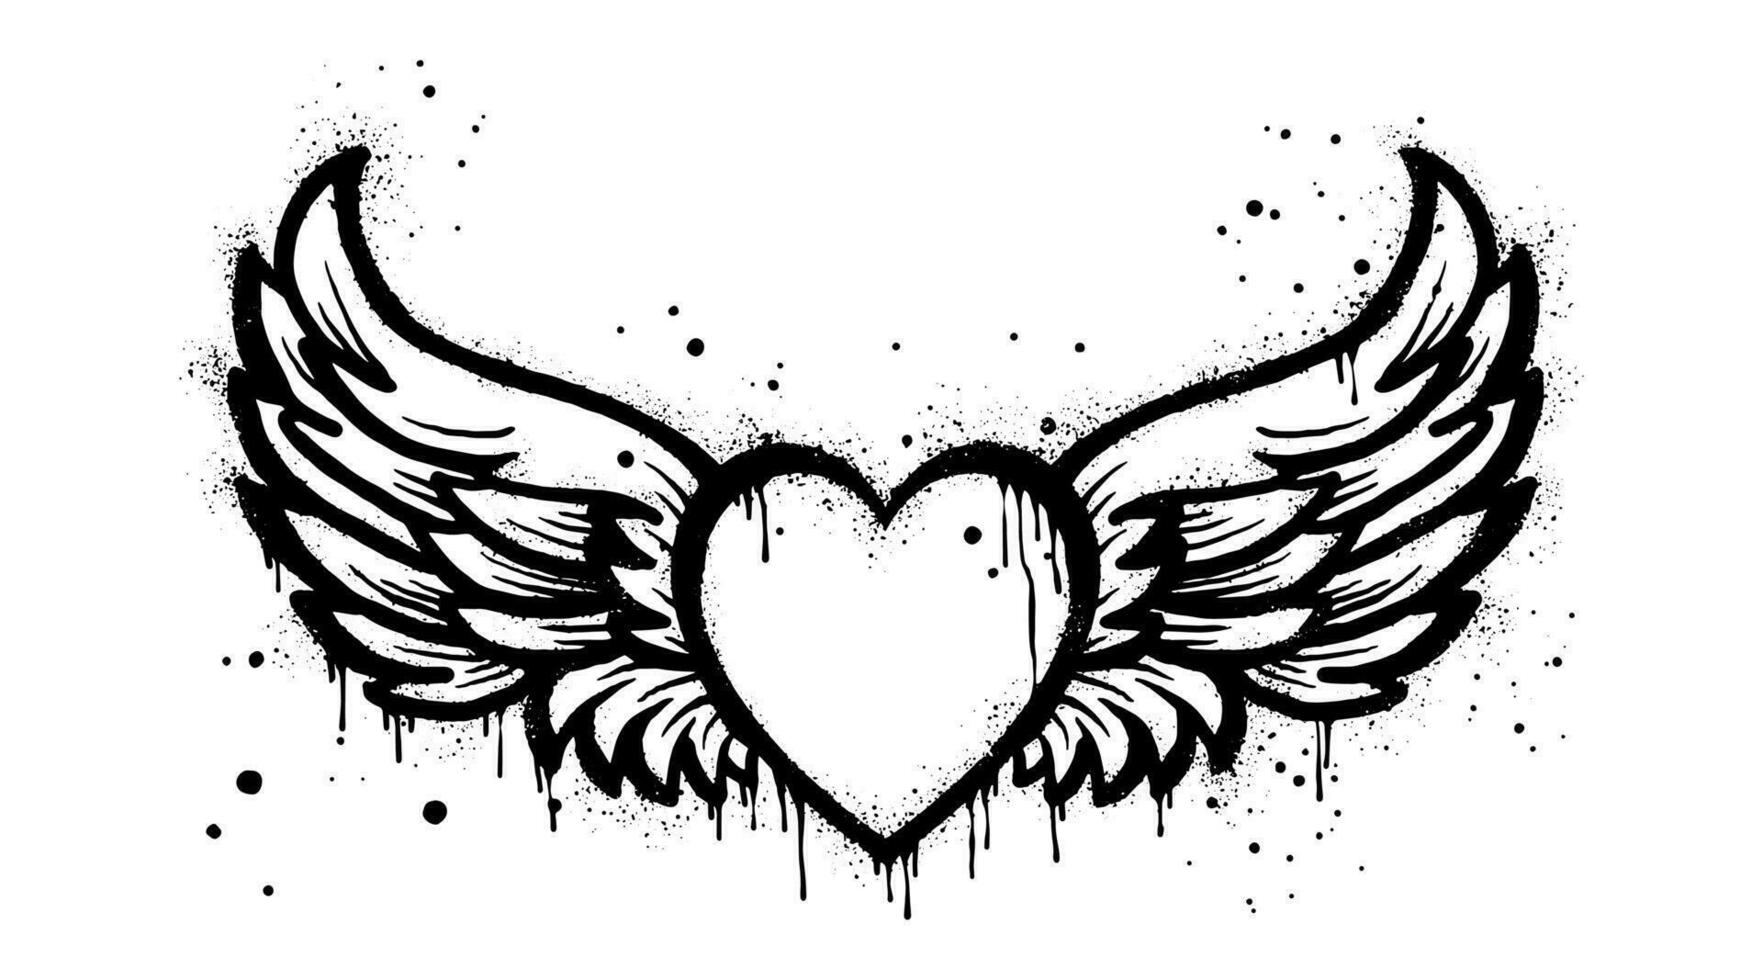 Spray gemalt Graffiti fliegendes Herz mit Flügel-Symbol in schwarz über weiß. Herz mit Flügeln Tropfsymbol. isoliert auf weißem Hintergrund. Vektor-Illustration vektor